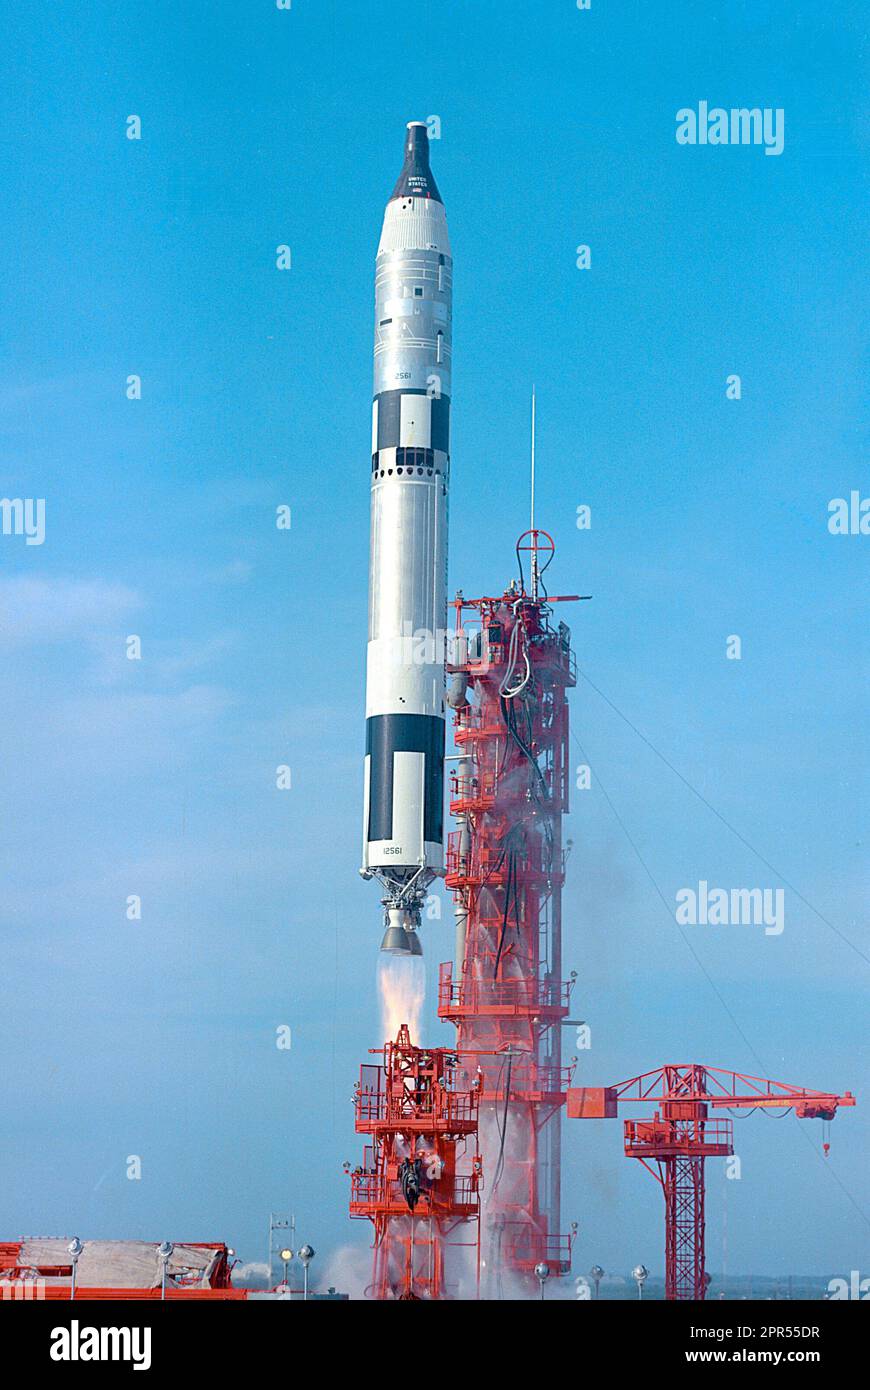 Il Gemini VI, in programma come missione di due giorni, è stato lanciato il 15 dicembre 1965 da Pad 19, portando astronauti Walter M. Schirra Jr., pilota di comando, e Thomas P. Stafford, pilota. Gemini VI si rendezvoused con Gemini VII, già orbitante la Terra. Foto Stock